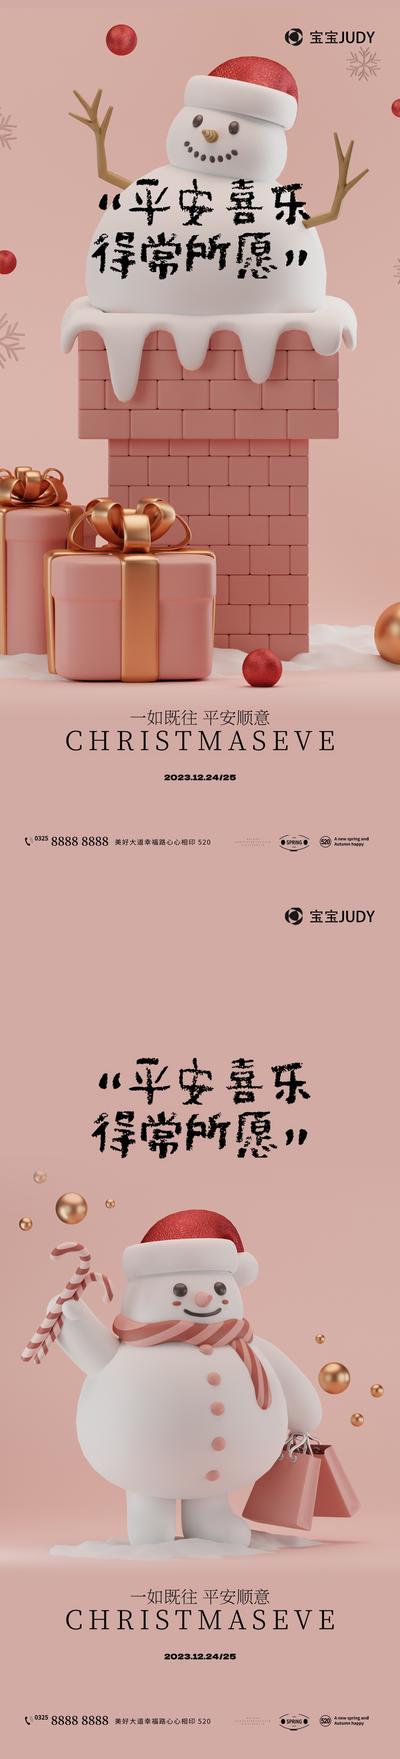 【南门网】广告 海报 插画 圣诞节 节日 创意 商业 3D立体 平安夜 矢量 商场 圣诞老人 红色 雪人 礼物 圣诞树 时尚